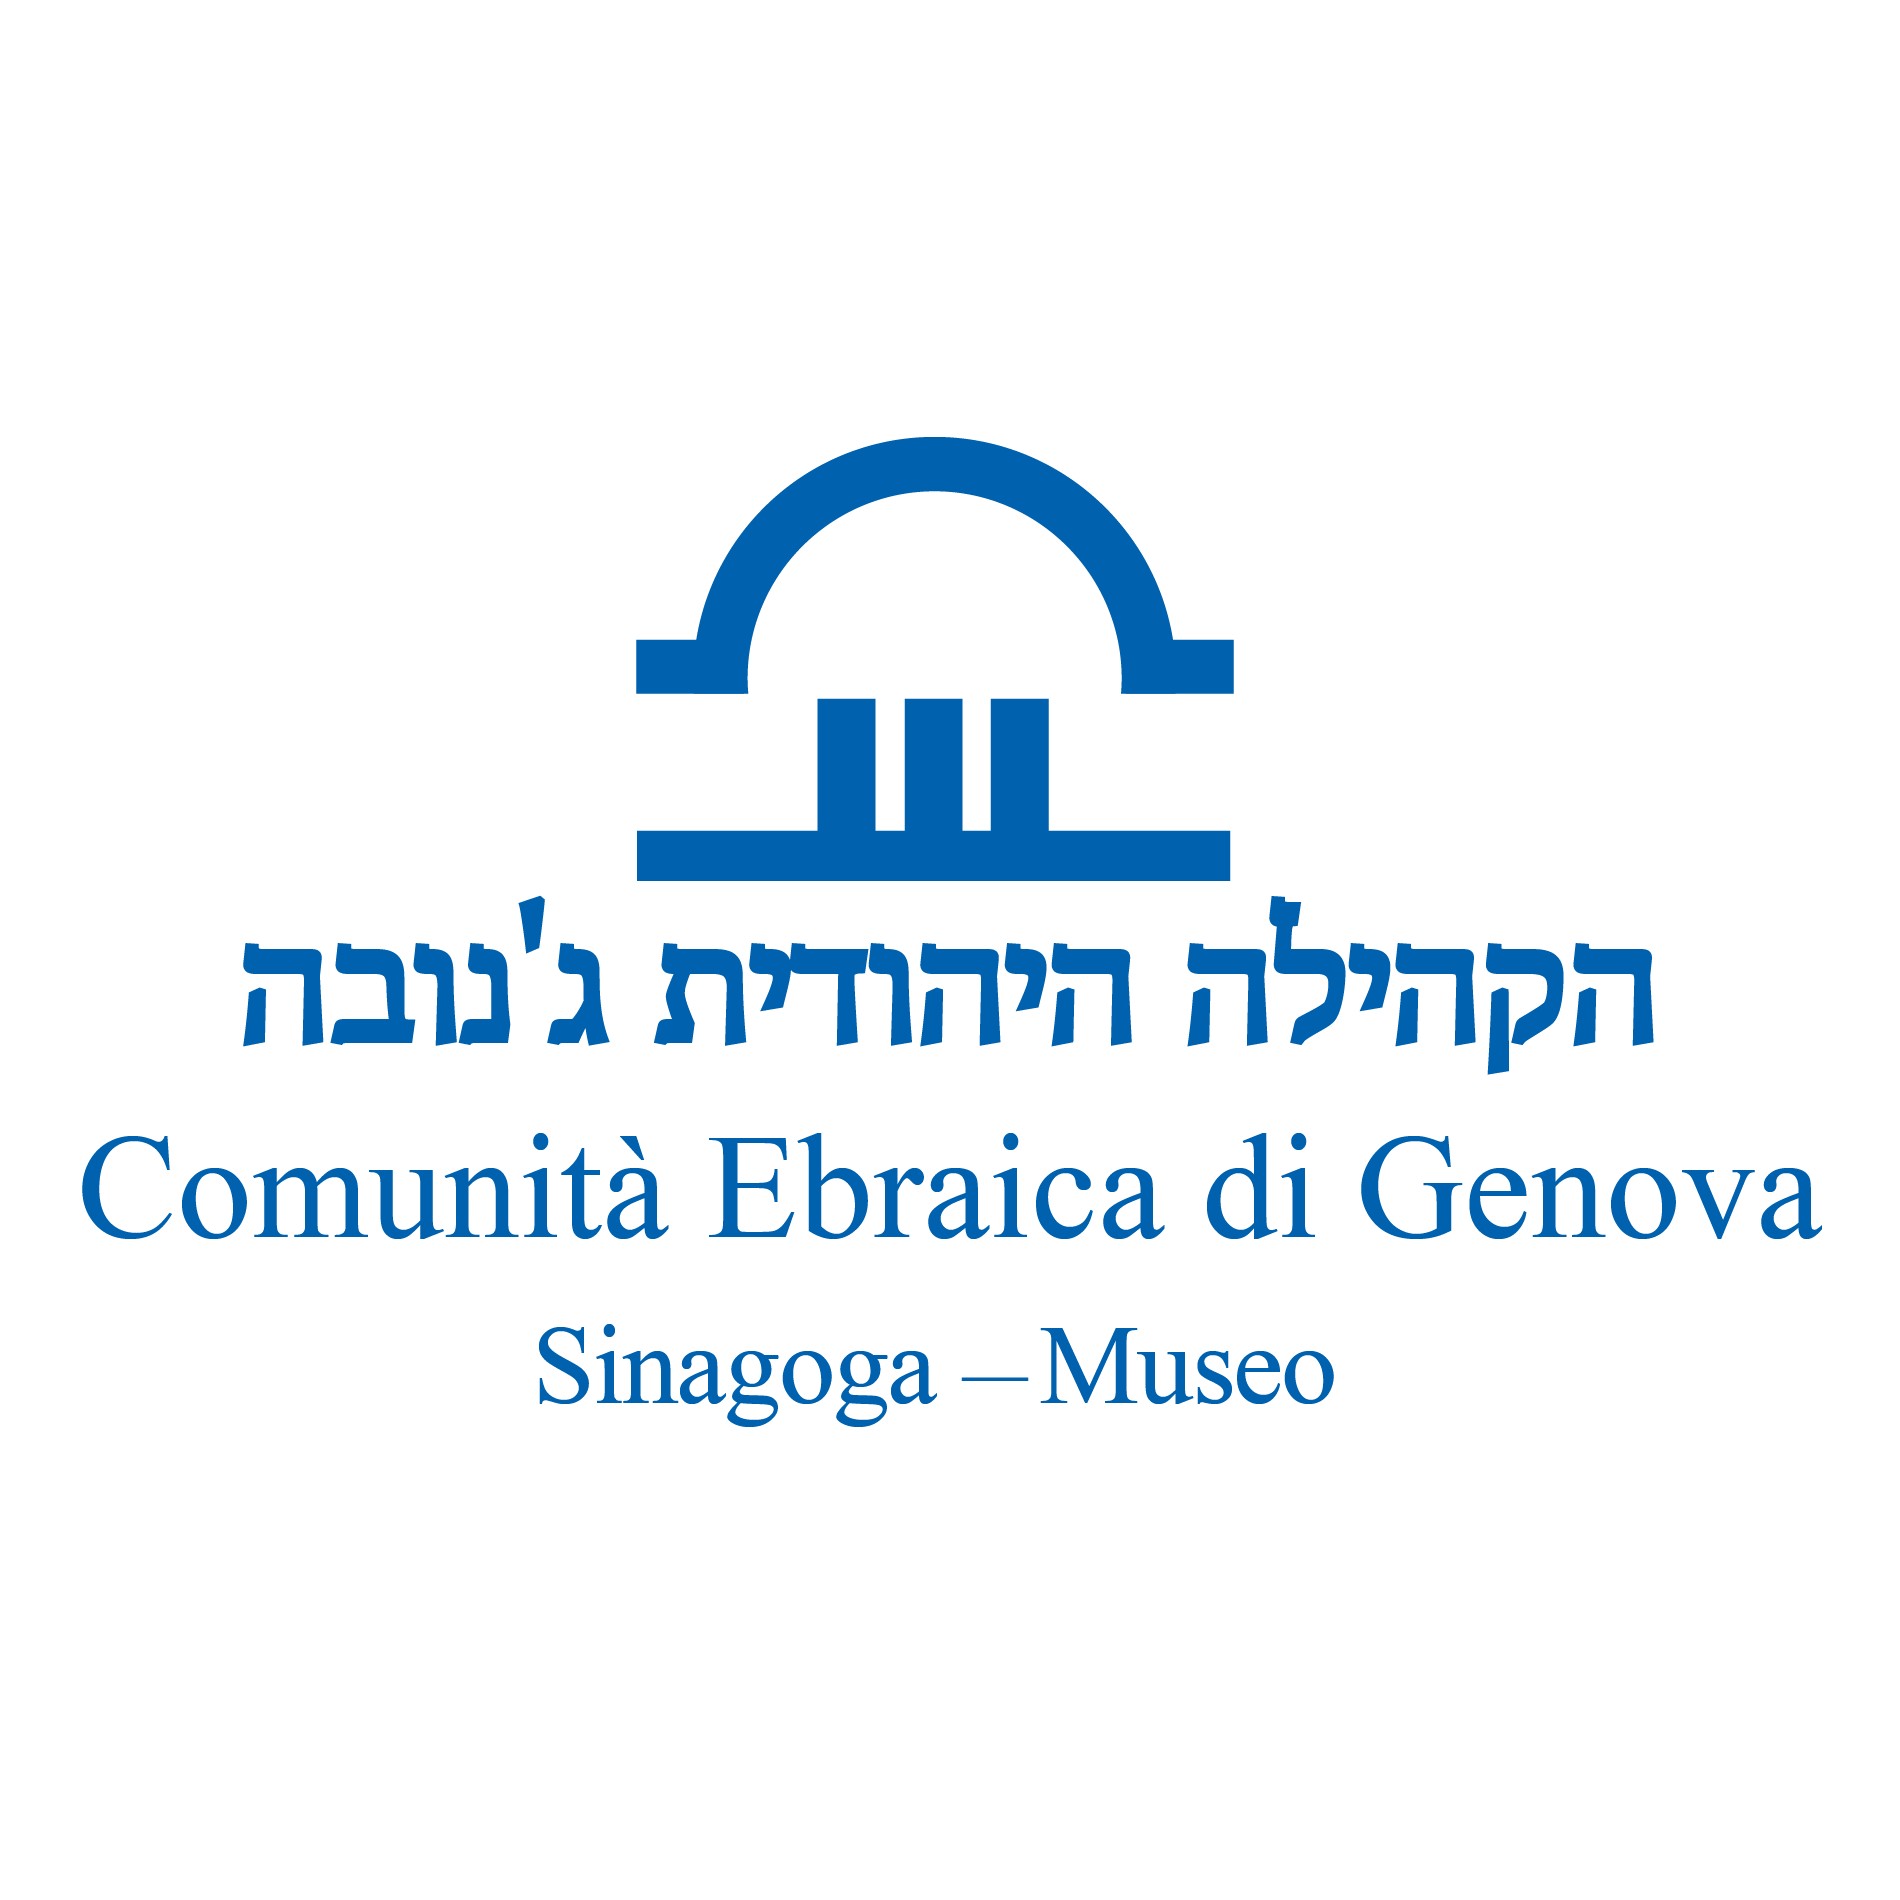 Comunità Ebraica di Genova